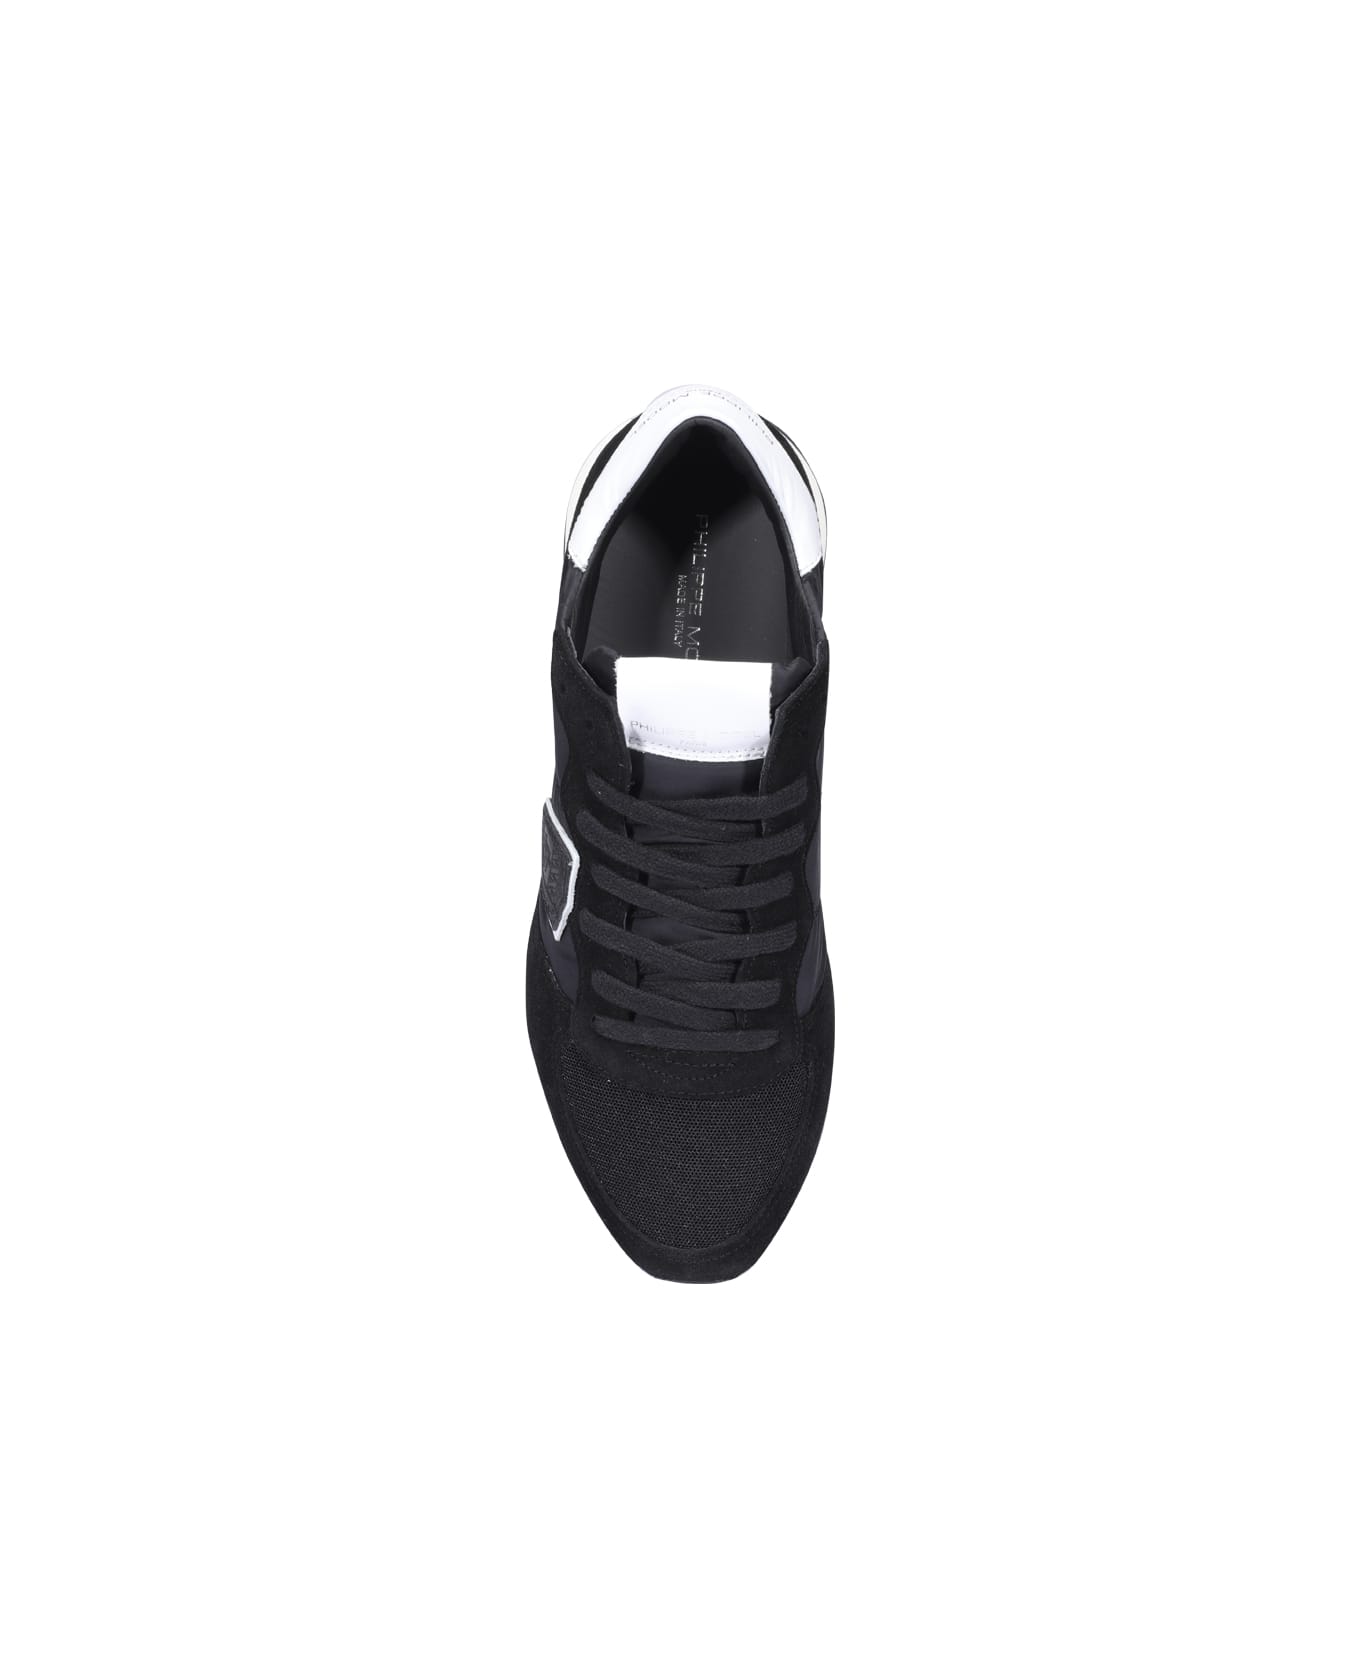 Philippe Model Trpx Veau Sneakers - Black